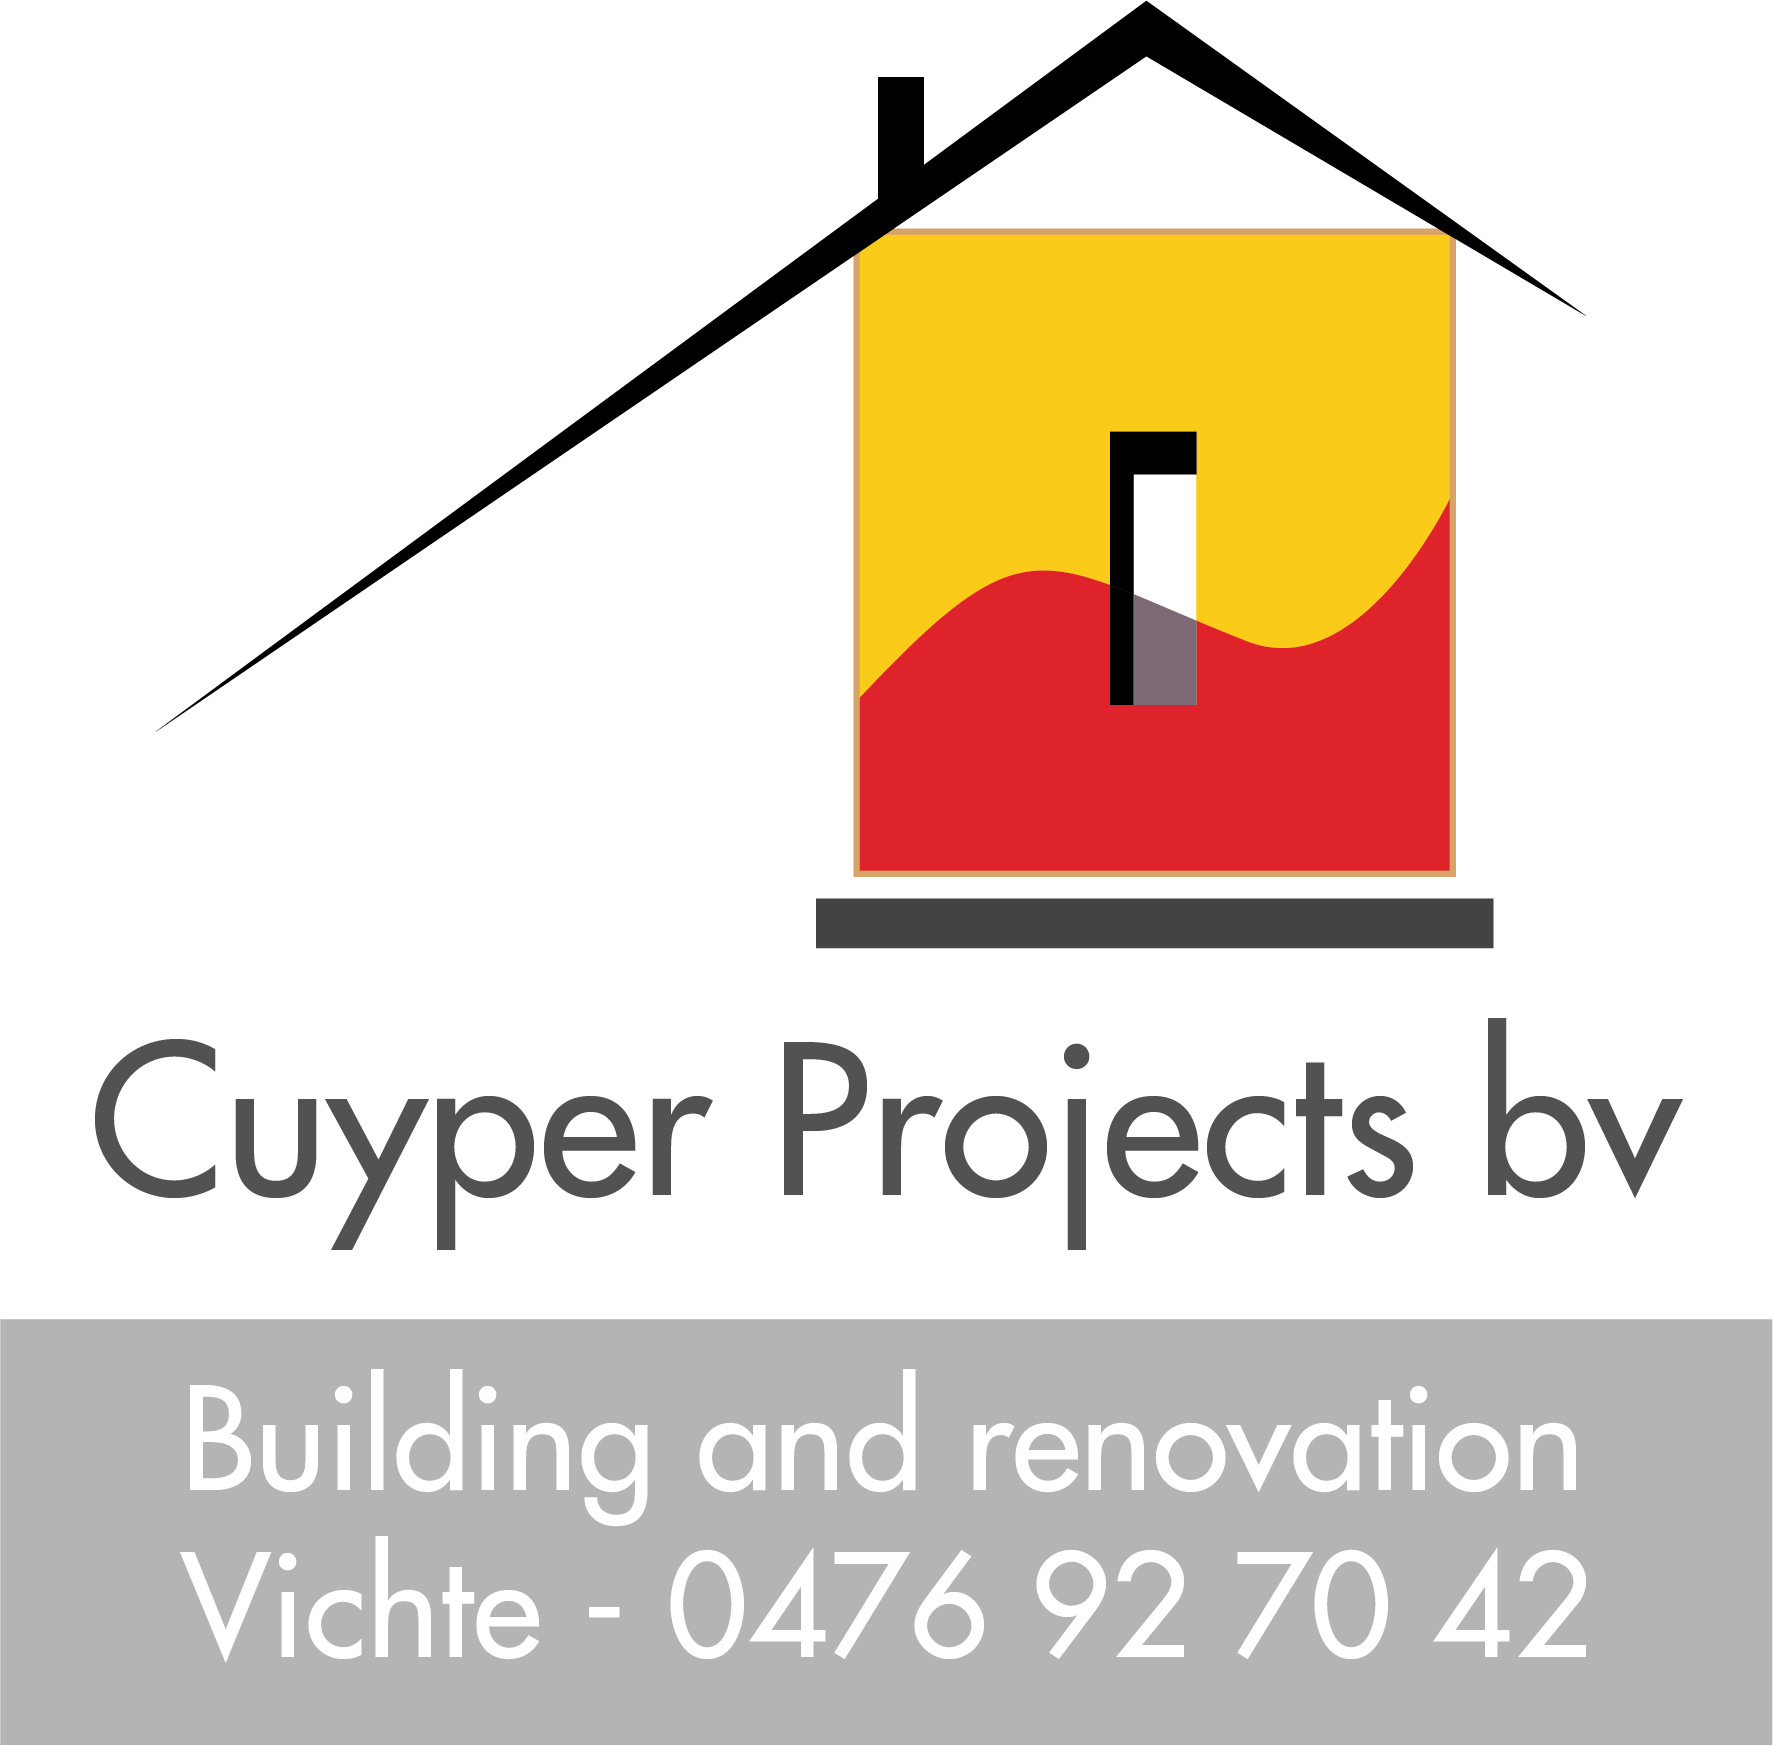 Cuyper Projects bv als partner met Contadors trui